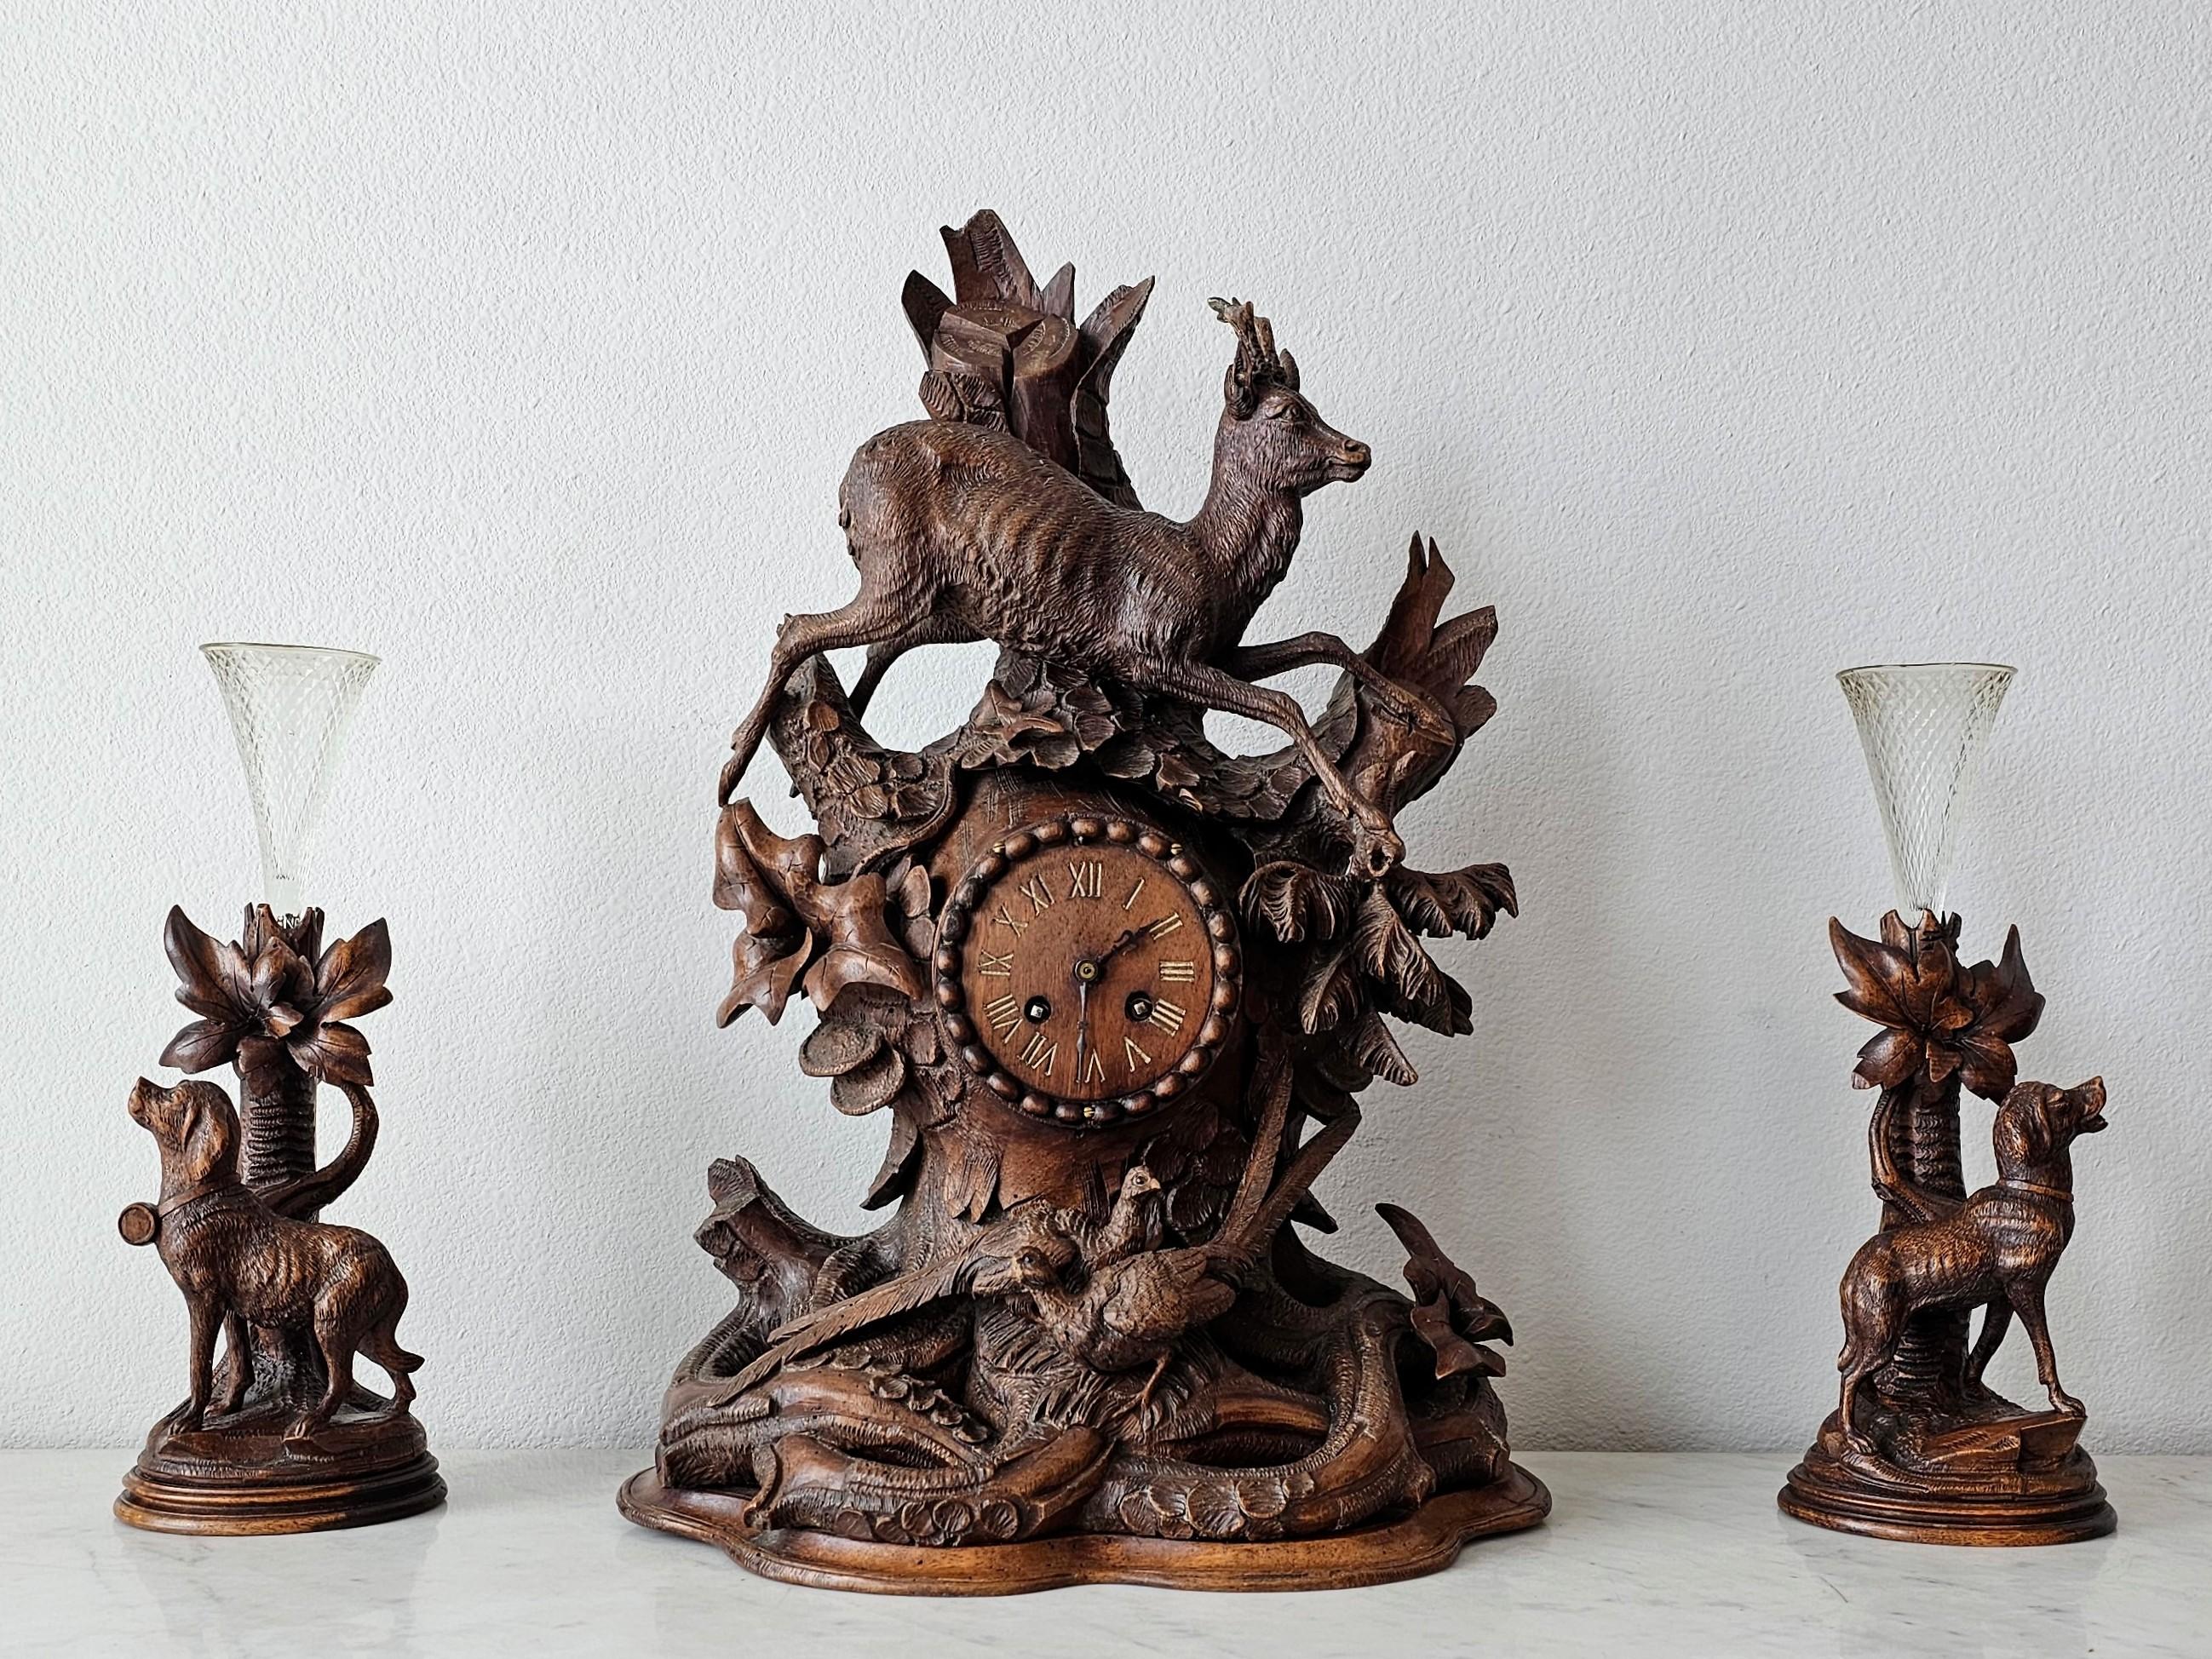 Magnifique ensemble de garnitures et d'horloges de cheminée en bois sculpté de la Forêt Noire, vers 1880.

Suisse ou allemand, fin du 19e siècle, une œuvre d'art vraiment extraordinaire, exceptionnellement exécutée, sculptée de façon complexe et